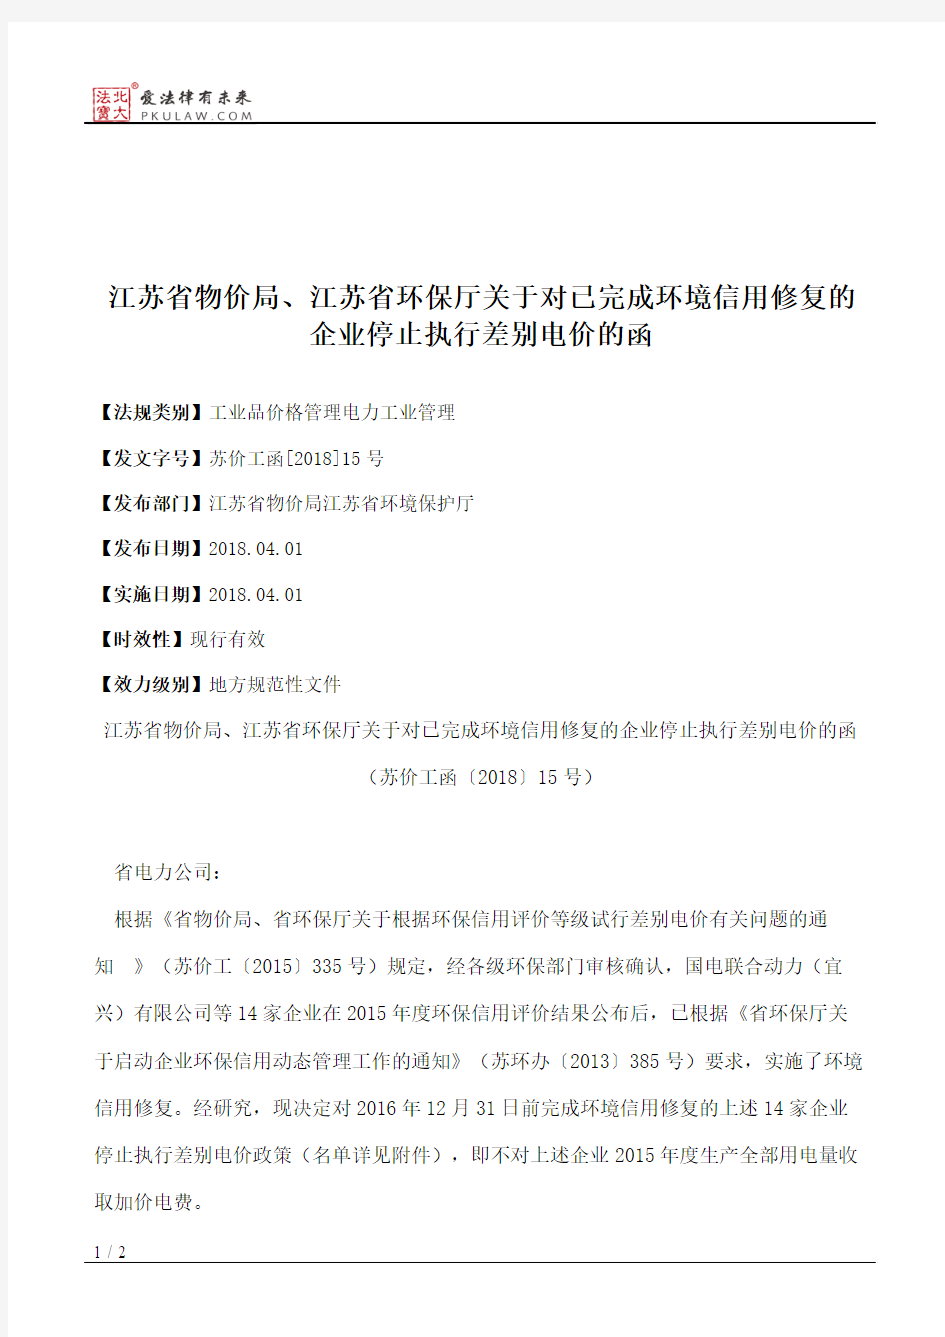 江苏省物价局、江苏省环保厅关于对已完成环境信用修复的企业停止